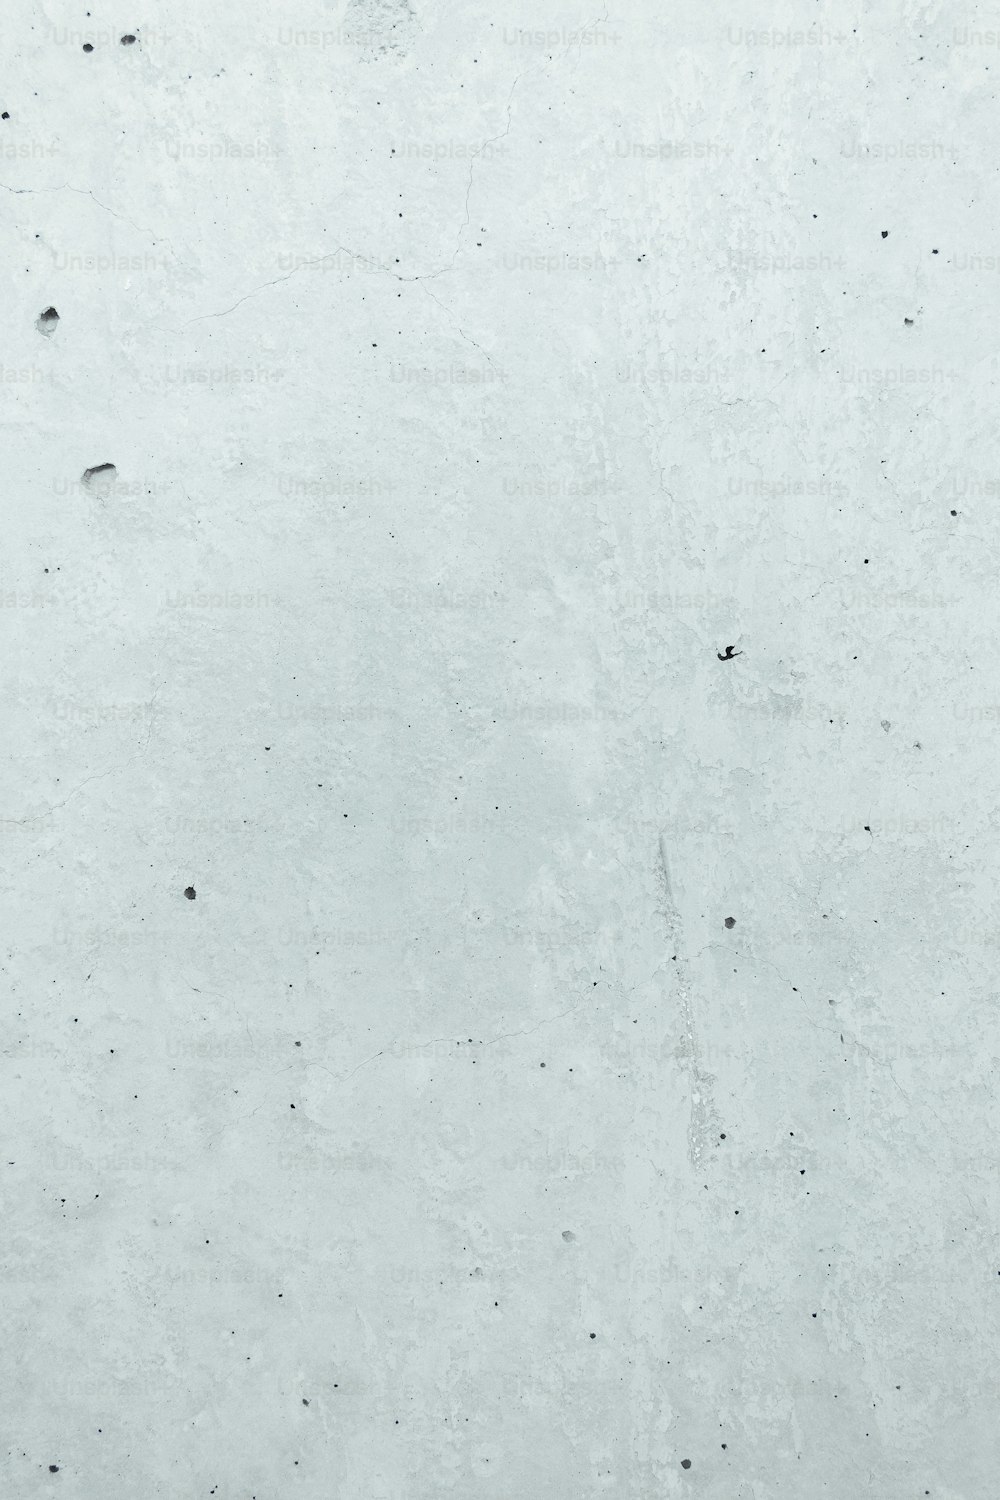 une photo en noir et blanc d’une personne sur une planche à neige